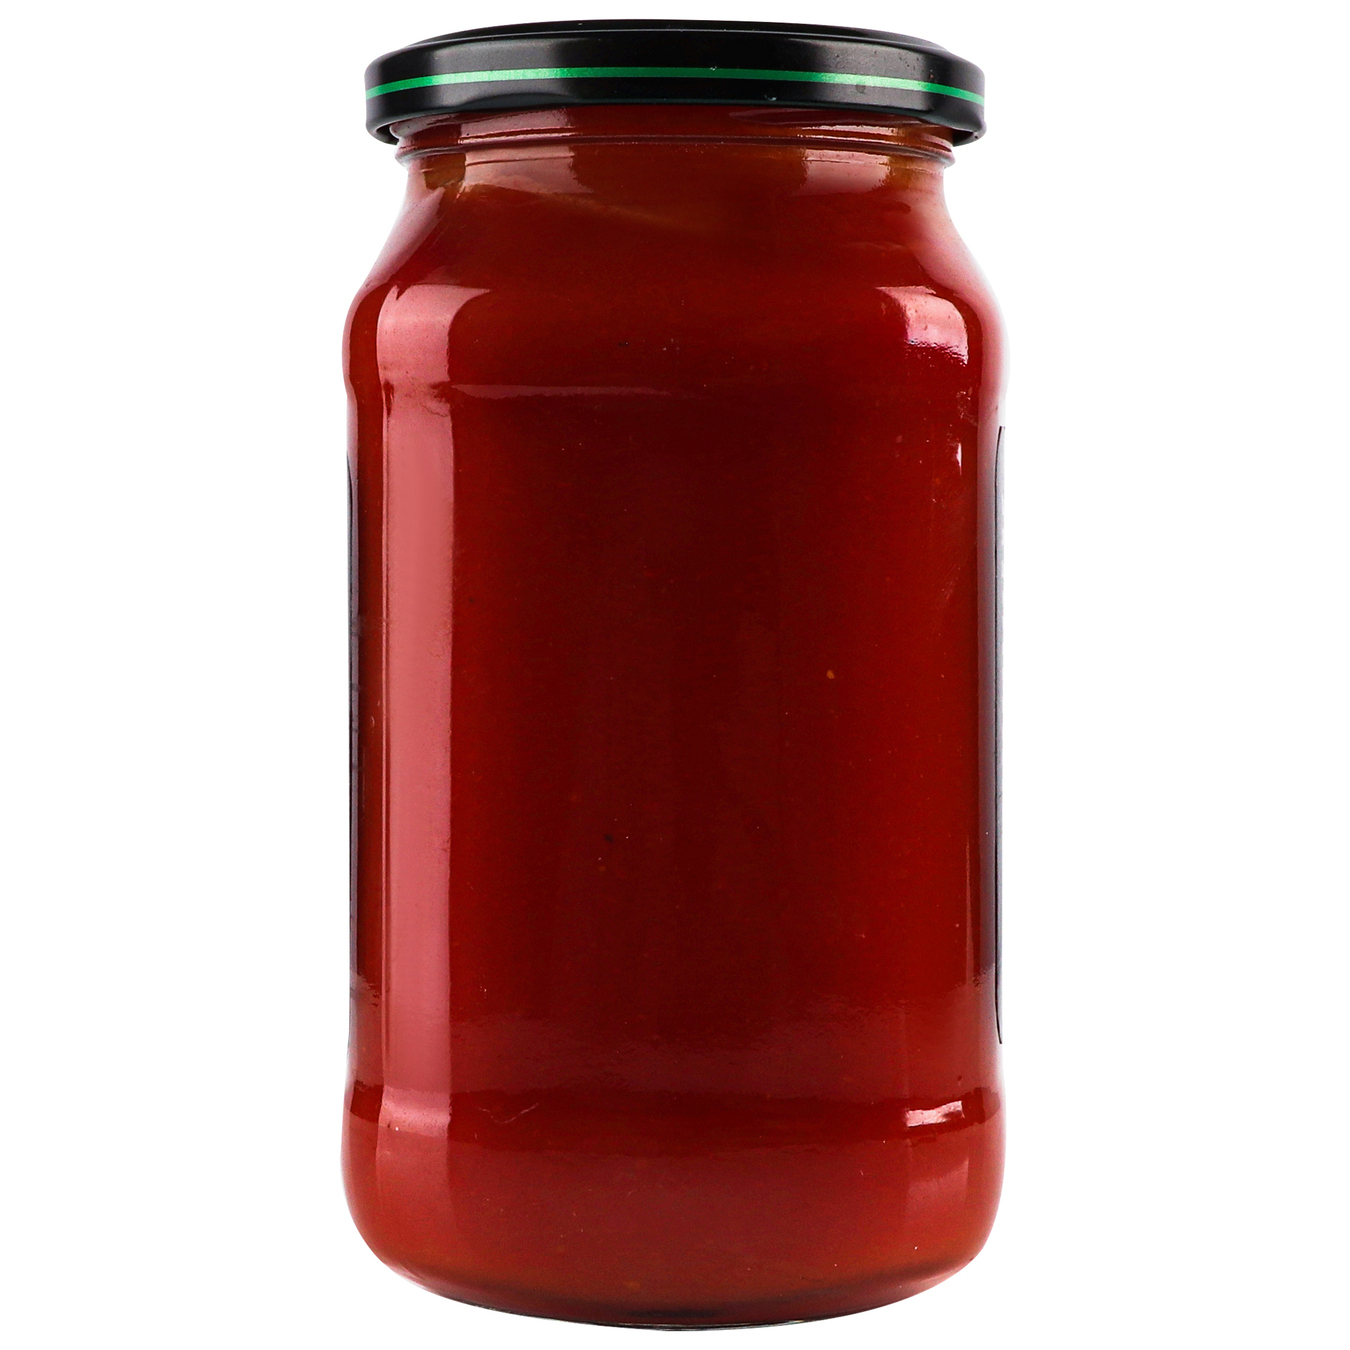 Runa Chili tomato sauce 485g 4